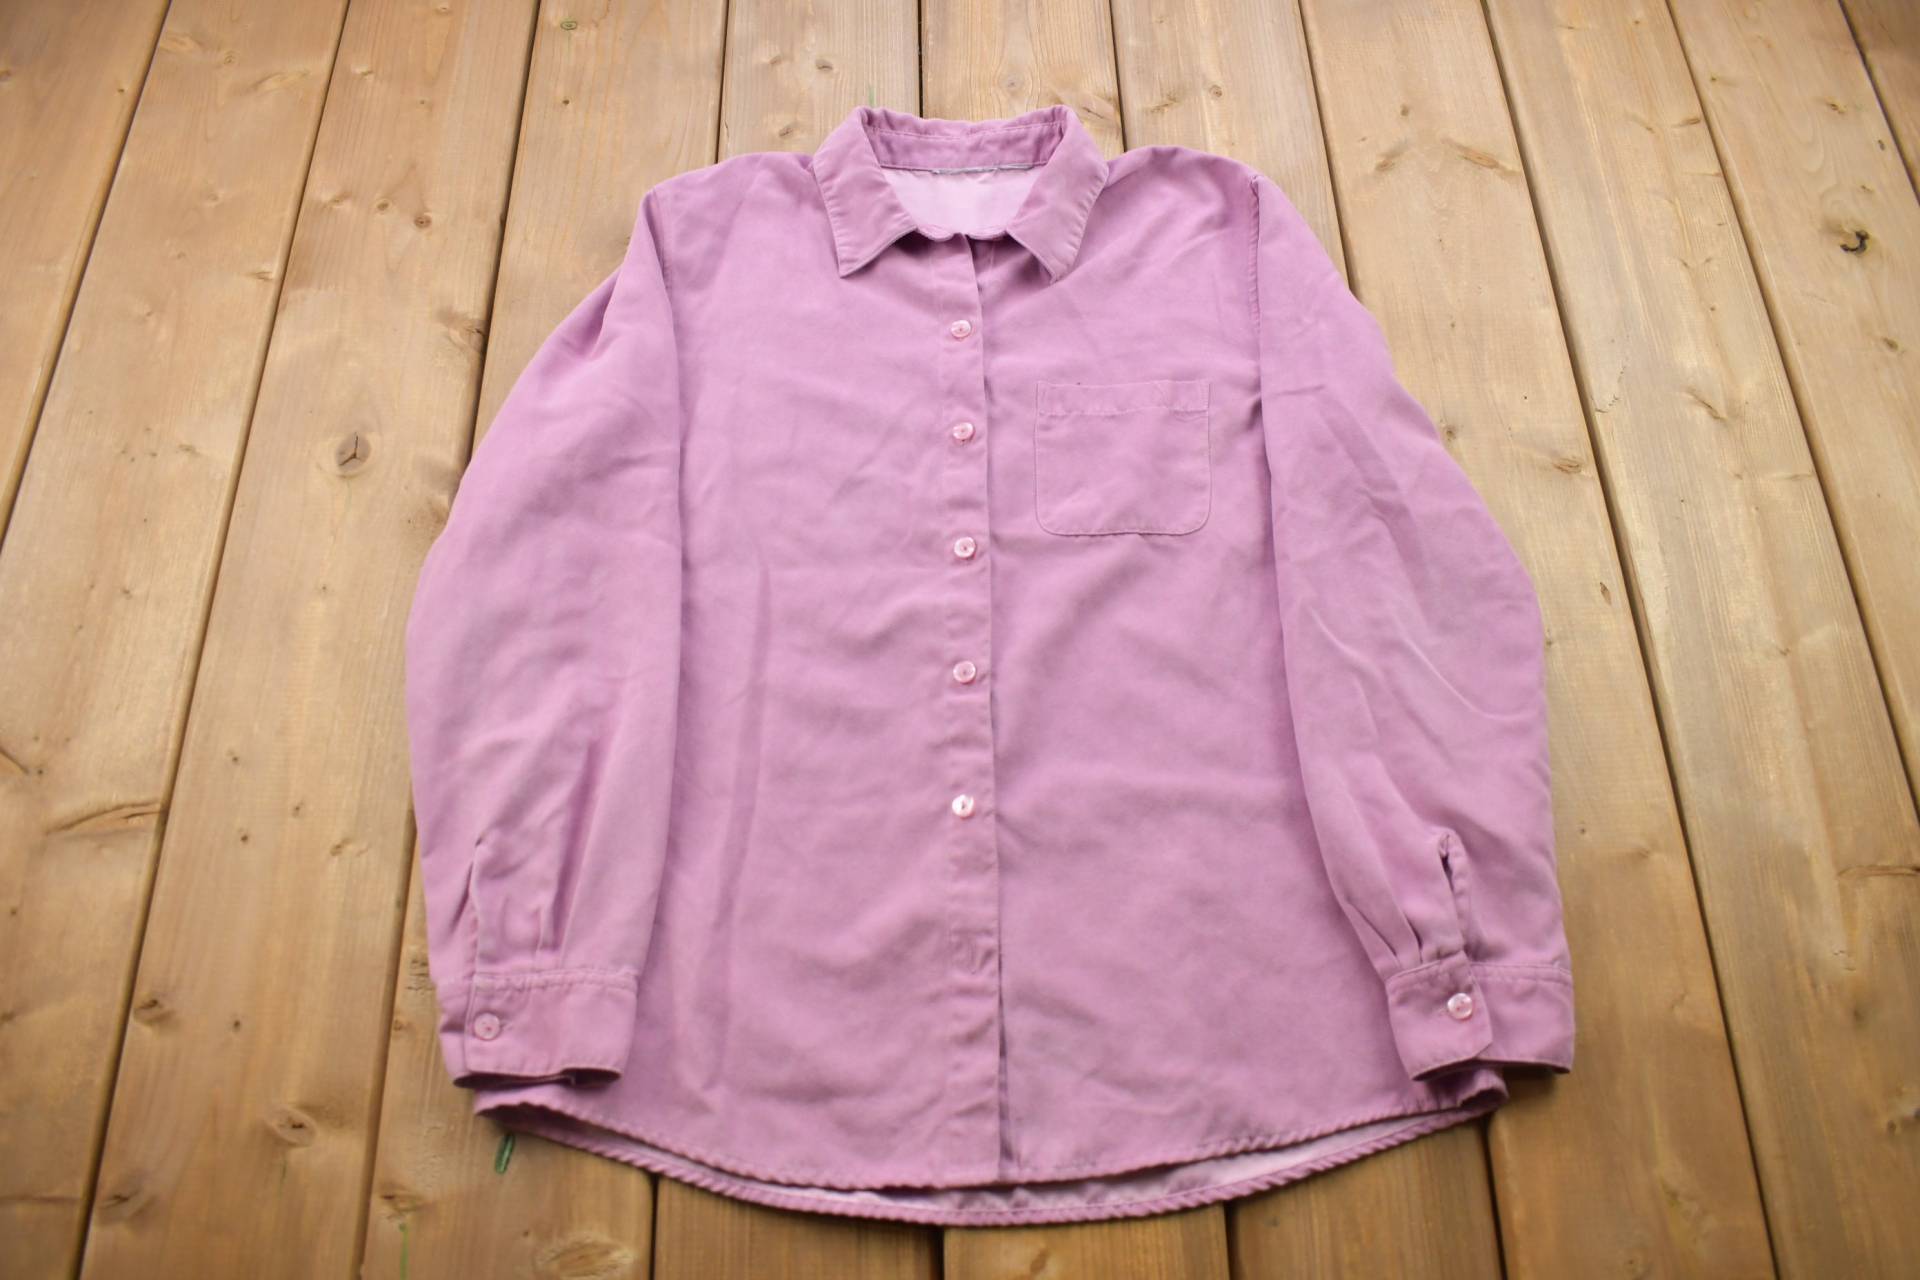 Vintage 1990Er Jahre Rosa Wildleder Button Up Shirt/Made in Usa Flanell Freizeitkleidung Arbeitskleidung Muster von Lostboysvintage